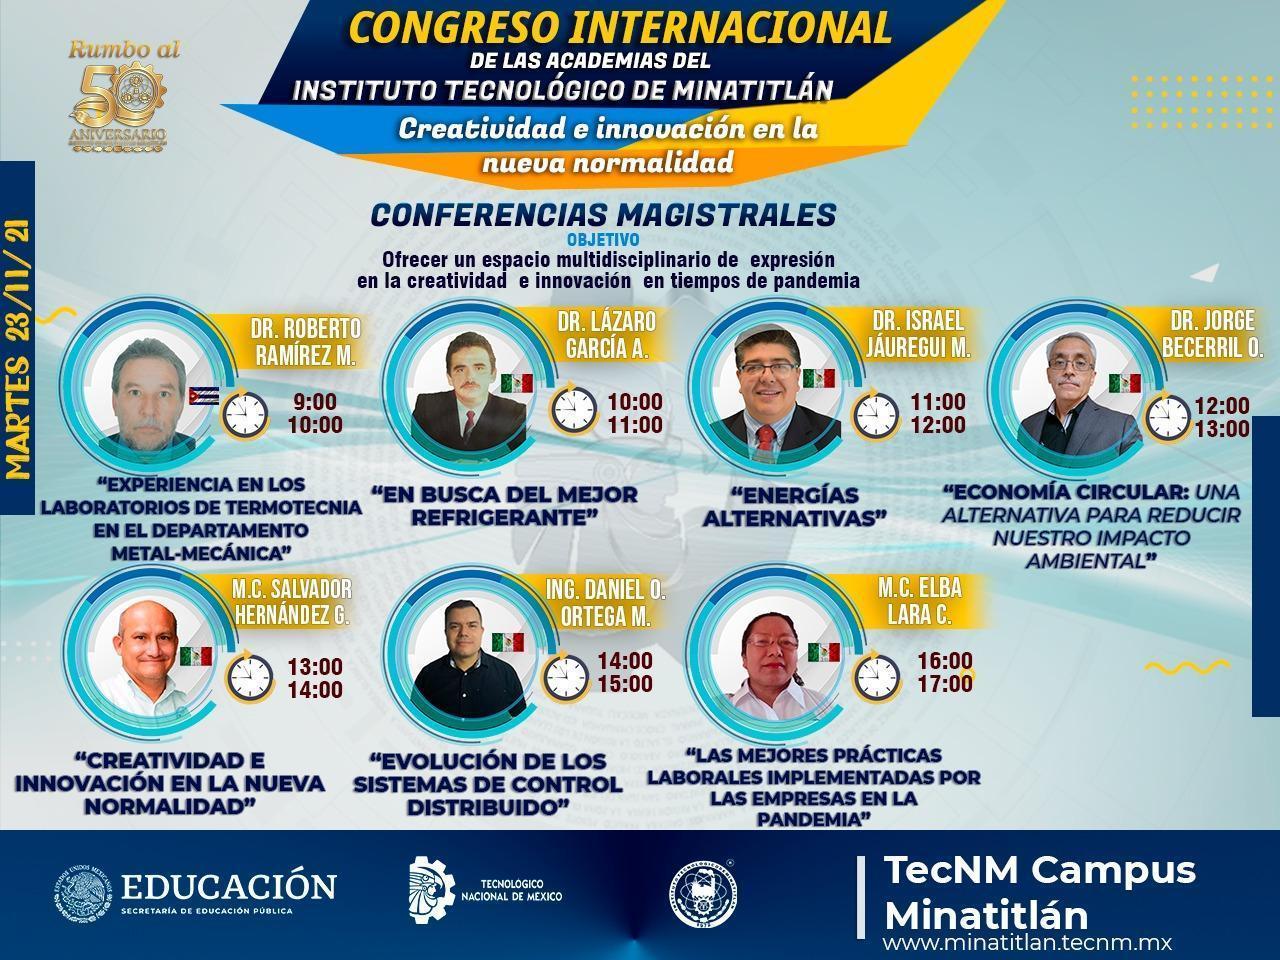 PRIMER CONGRESO INTERNACIONAL DE LAS ACADEMIAS DEL INSTITUTO TECNOLÓGICO DE MINATITLÁN